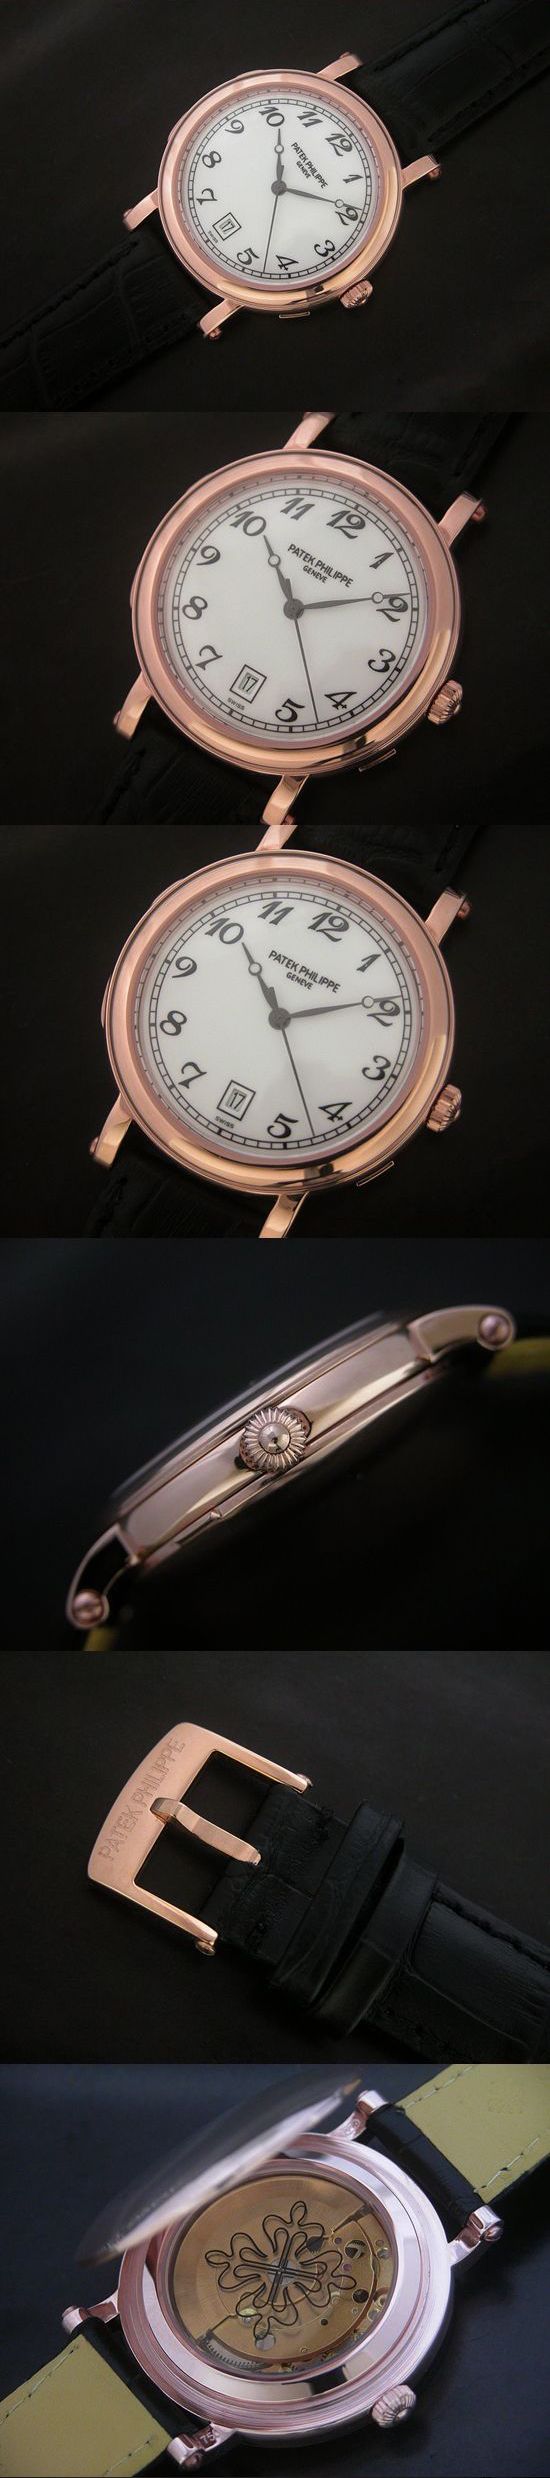 おしゃれなブランド時計がパテックフィリップ-カラトラバ-PATEK PHILIPPE-4860-aj-男性用を提供します.